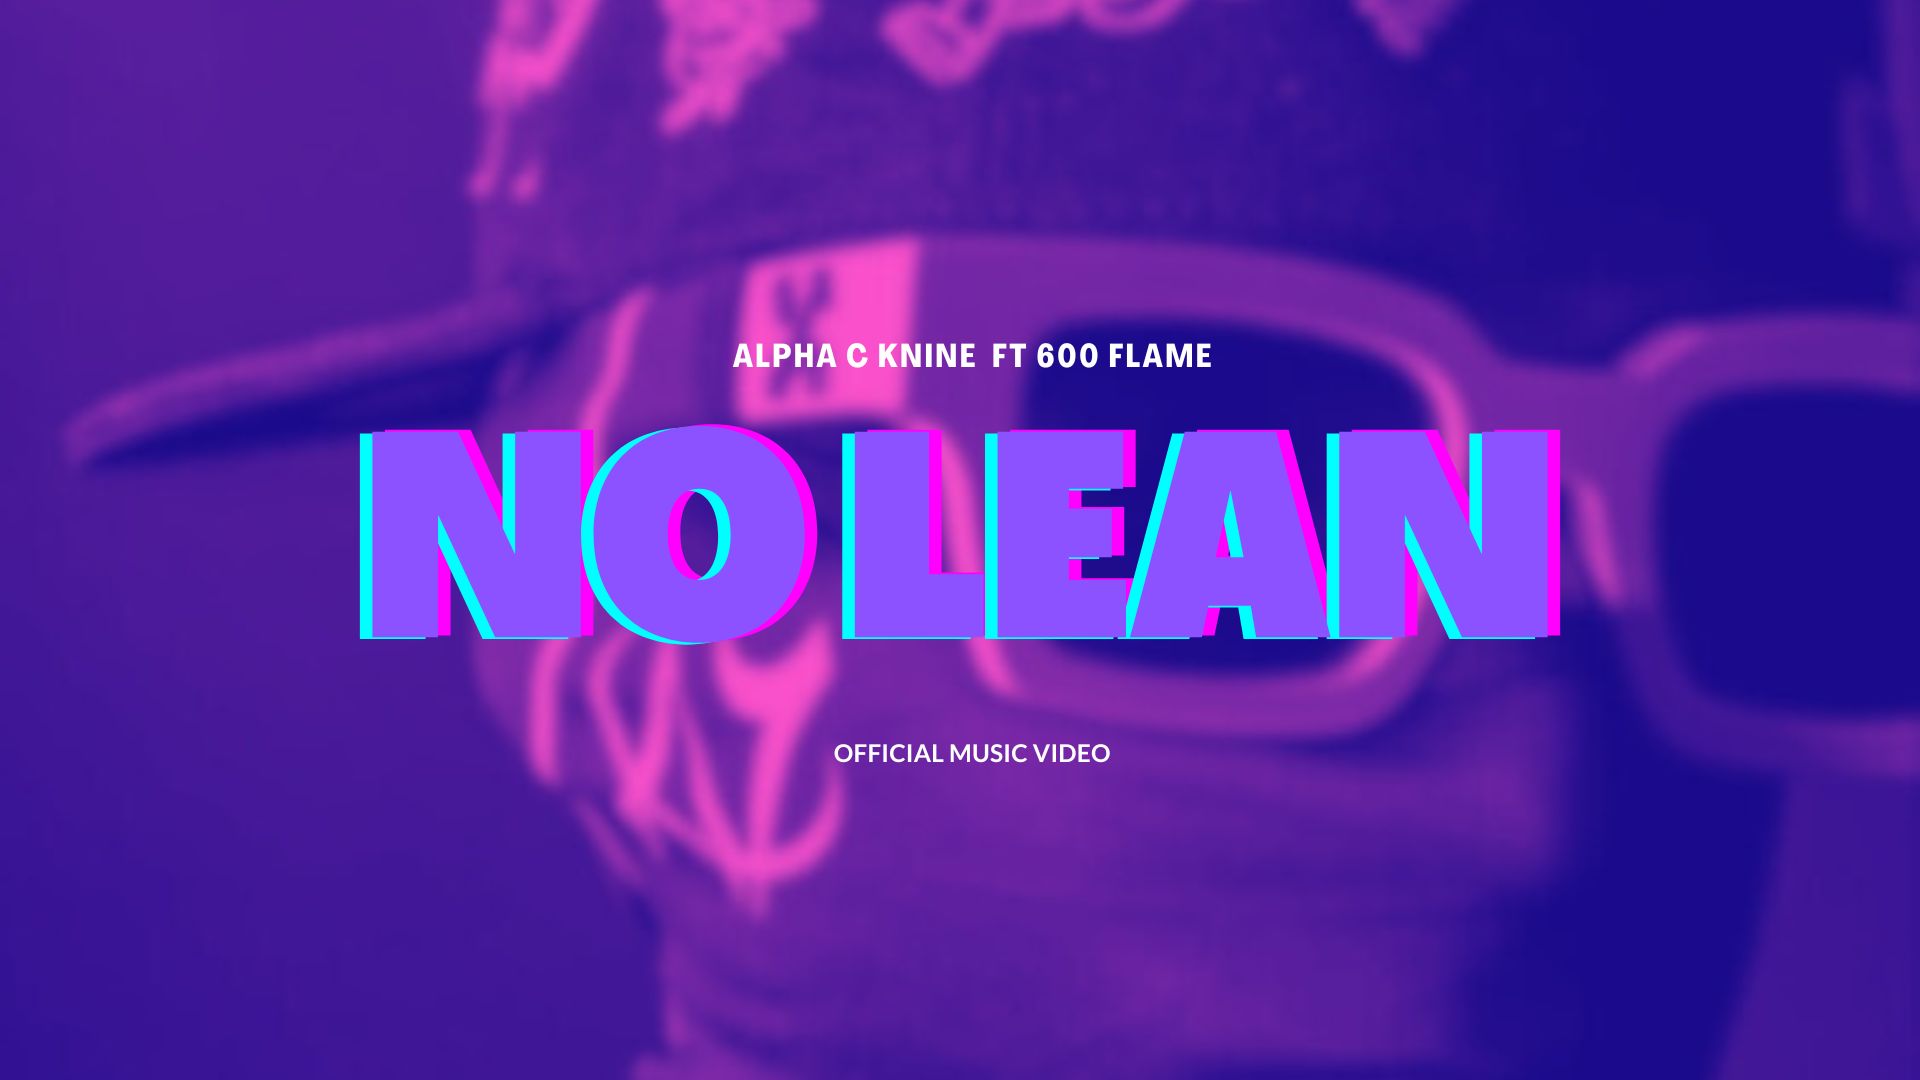 No Lean